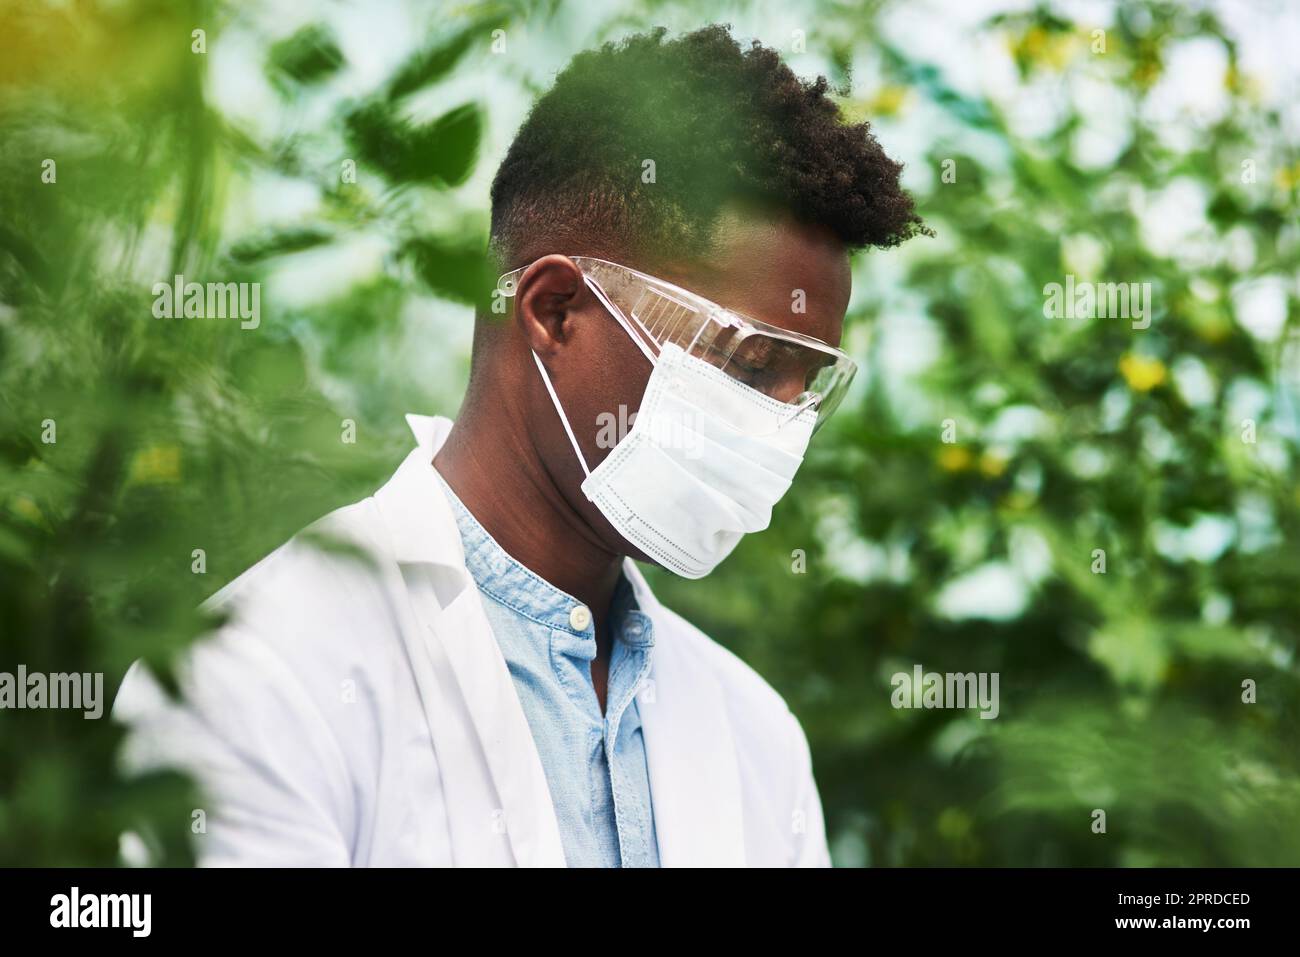 Sie müssen sich zunächst vor Pflanzenallergien schützen. Ein junger Botaniker trägt schützende Augen- und Gesichtsausrüstung, während er im Freien in der Natur arbeitet. Stockfoto